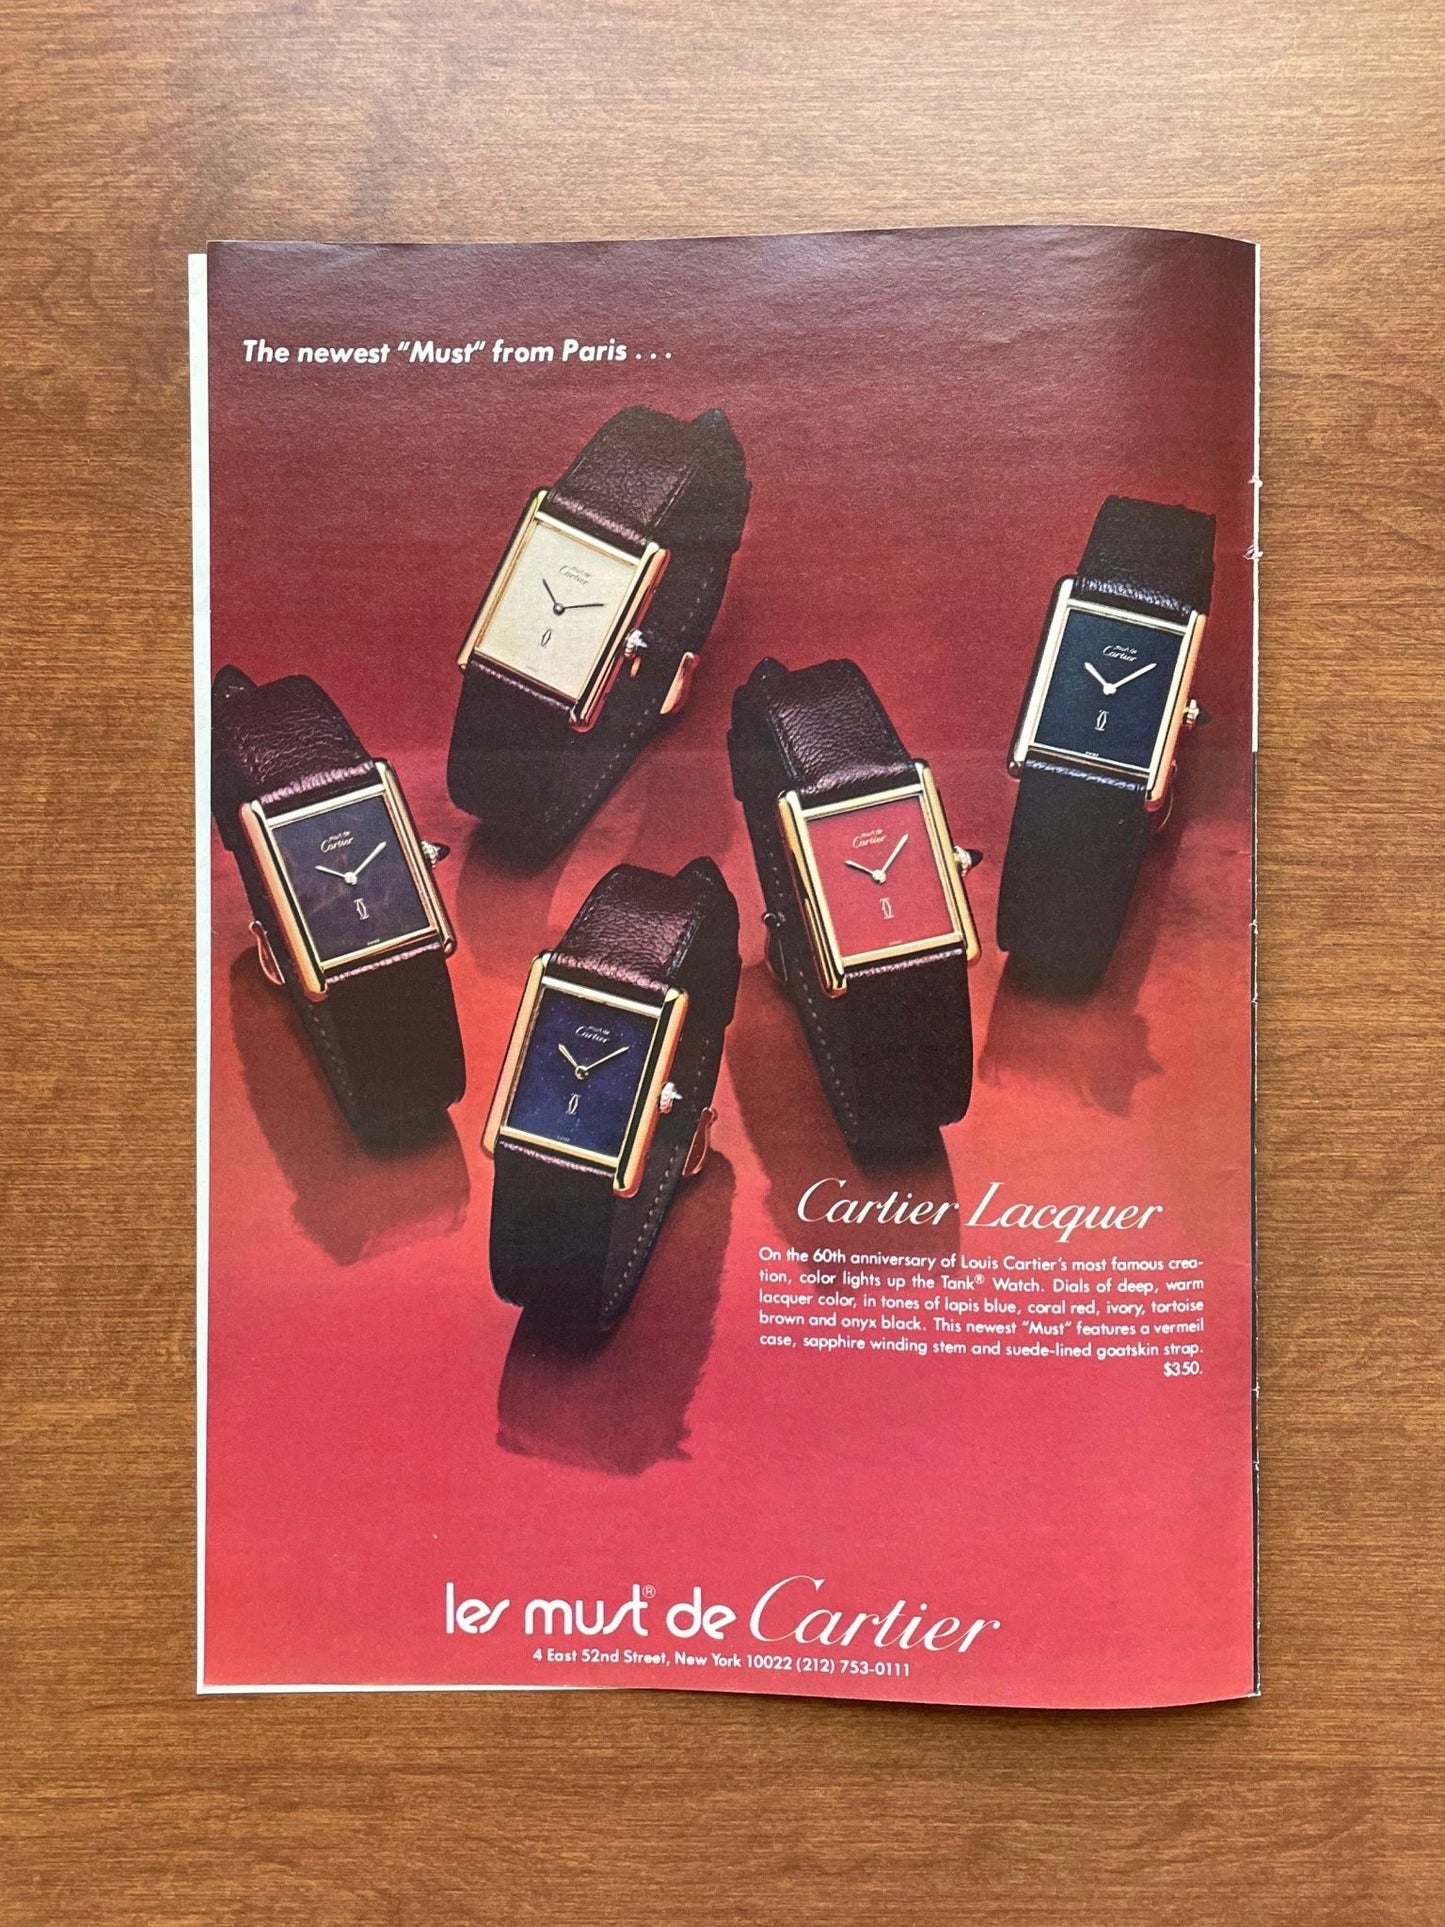 1977 "les must de Cartier" Collection Advertisement